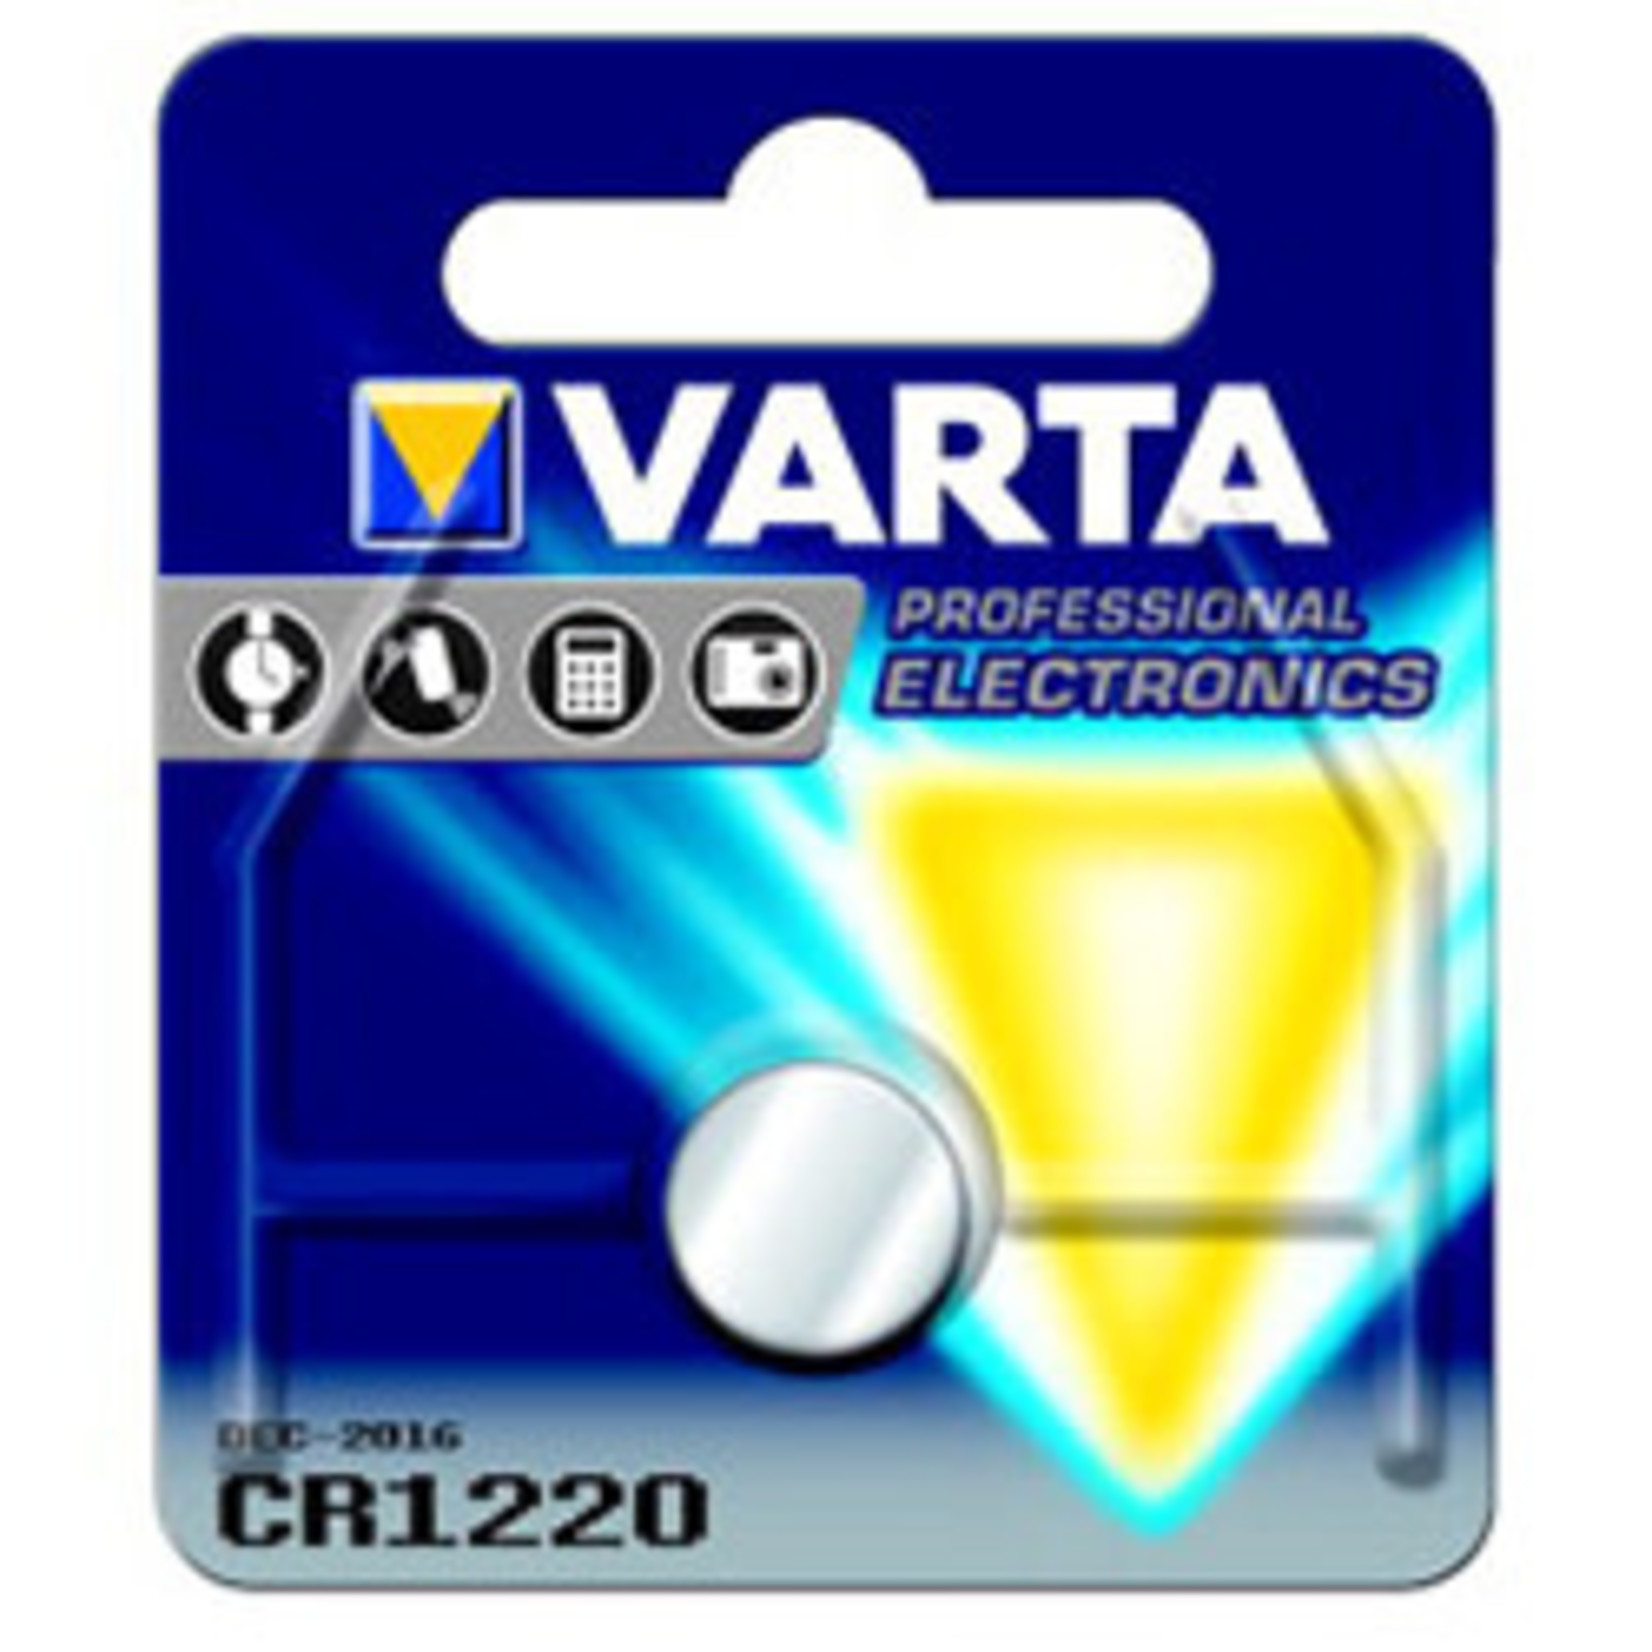 Varta Varta CR1220 Battery